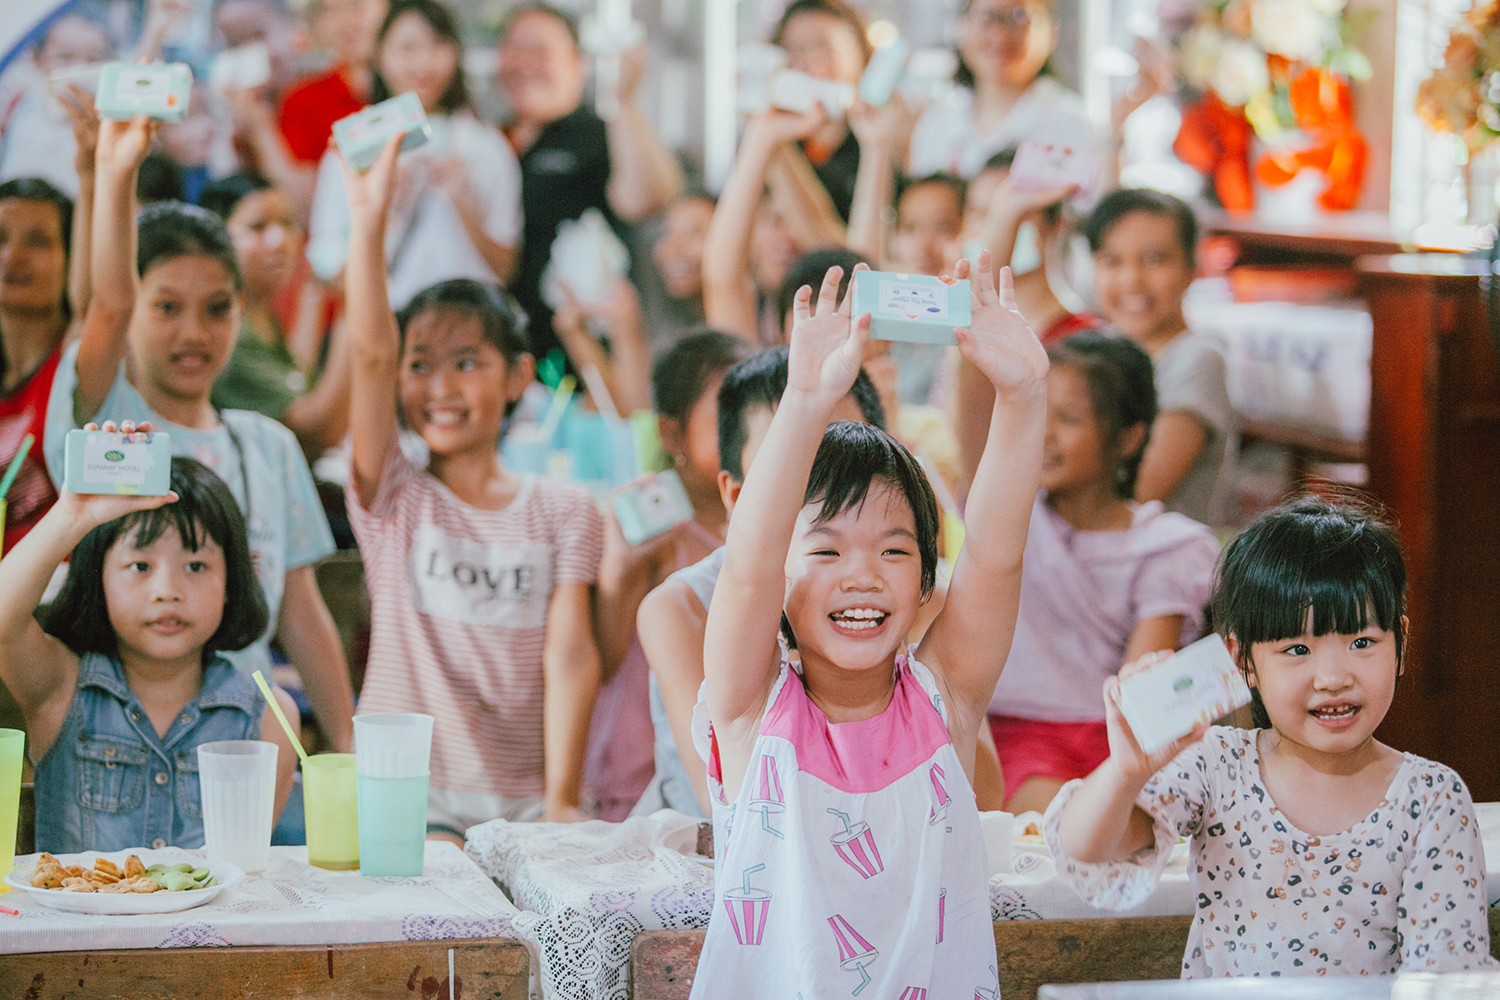 Chương trình lần đầu tiên được thực hiện tại Campuchia vào năm 2013 bởi ông Stefan Phang, Giám đốc trách nhiệm xã hội của công ty Diversey. Tính đến cuối năm 2017, chương trình được triển khai tại 39 quốc gia, 155 thành phố, 539 khách sạn, giúp tái chế 2.569 tấn xà phòng, tạo ra 21,4 triệu bánh xà phòng mang lại lợi ích cho hàng triệu người trên khắp hành tinh. Tại Việt Nam, chương trình được bắt đầu từ tháng 8/2015.
